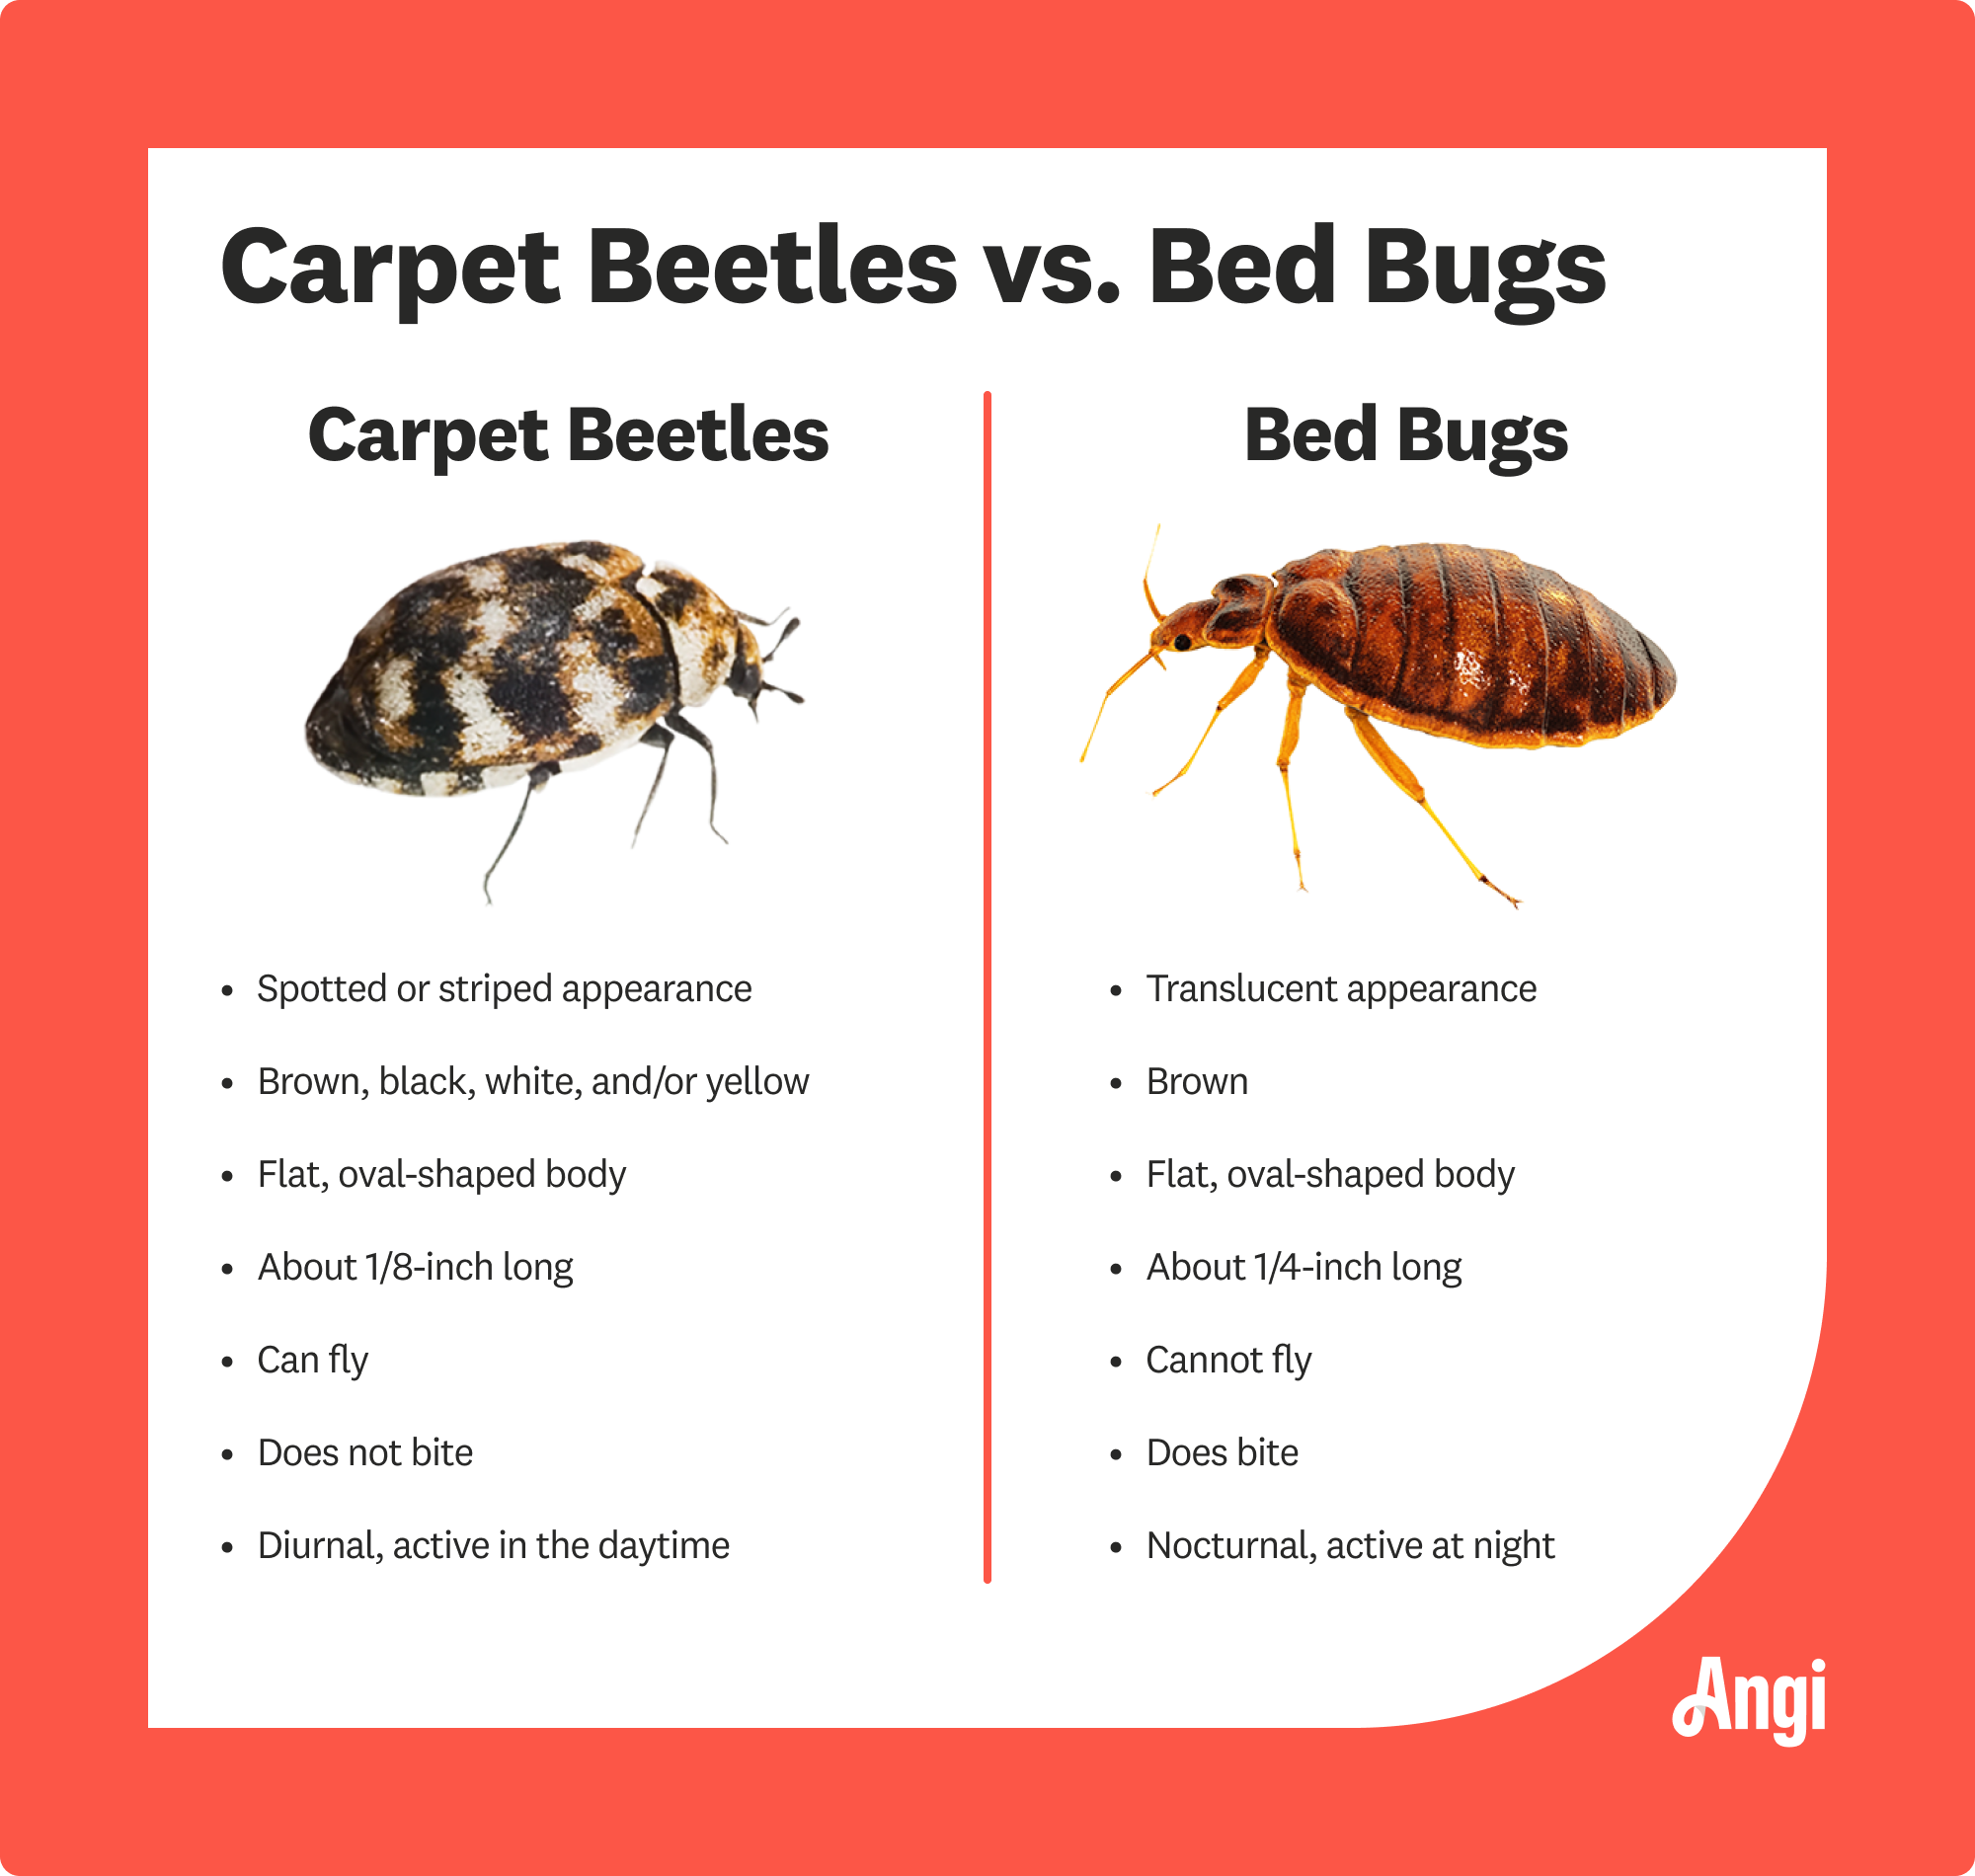 do bed bugs like carpet